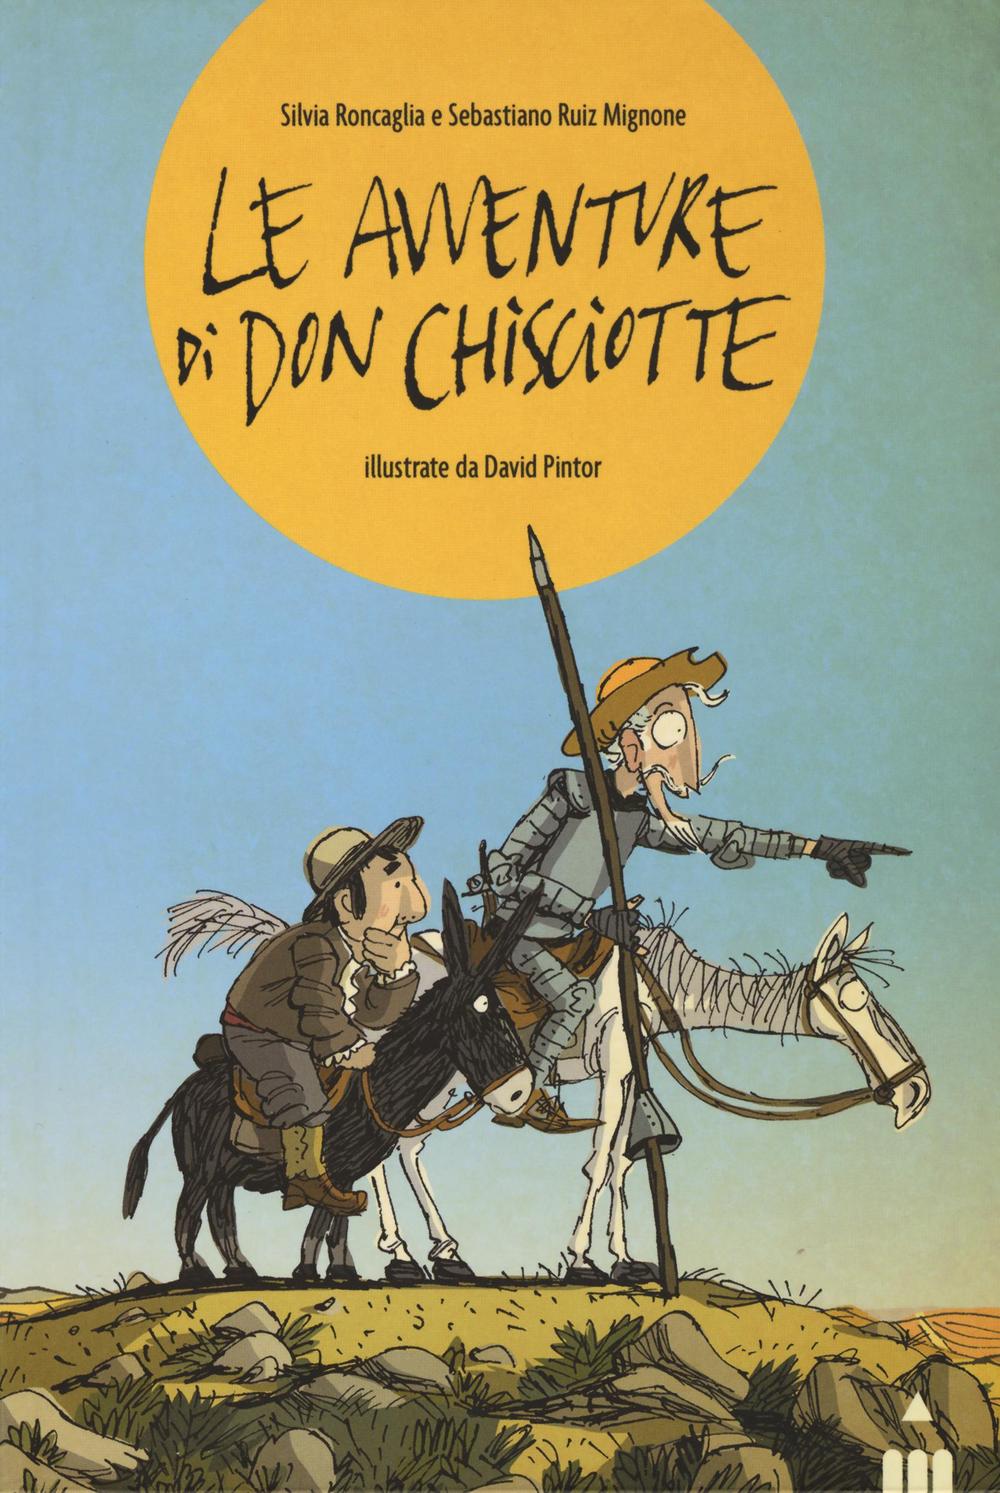 Le avventure di Don Chisciotte